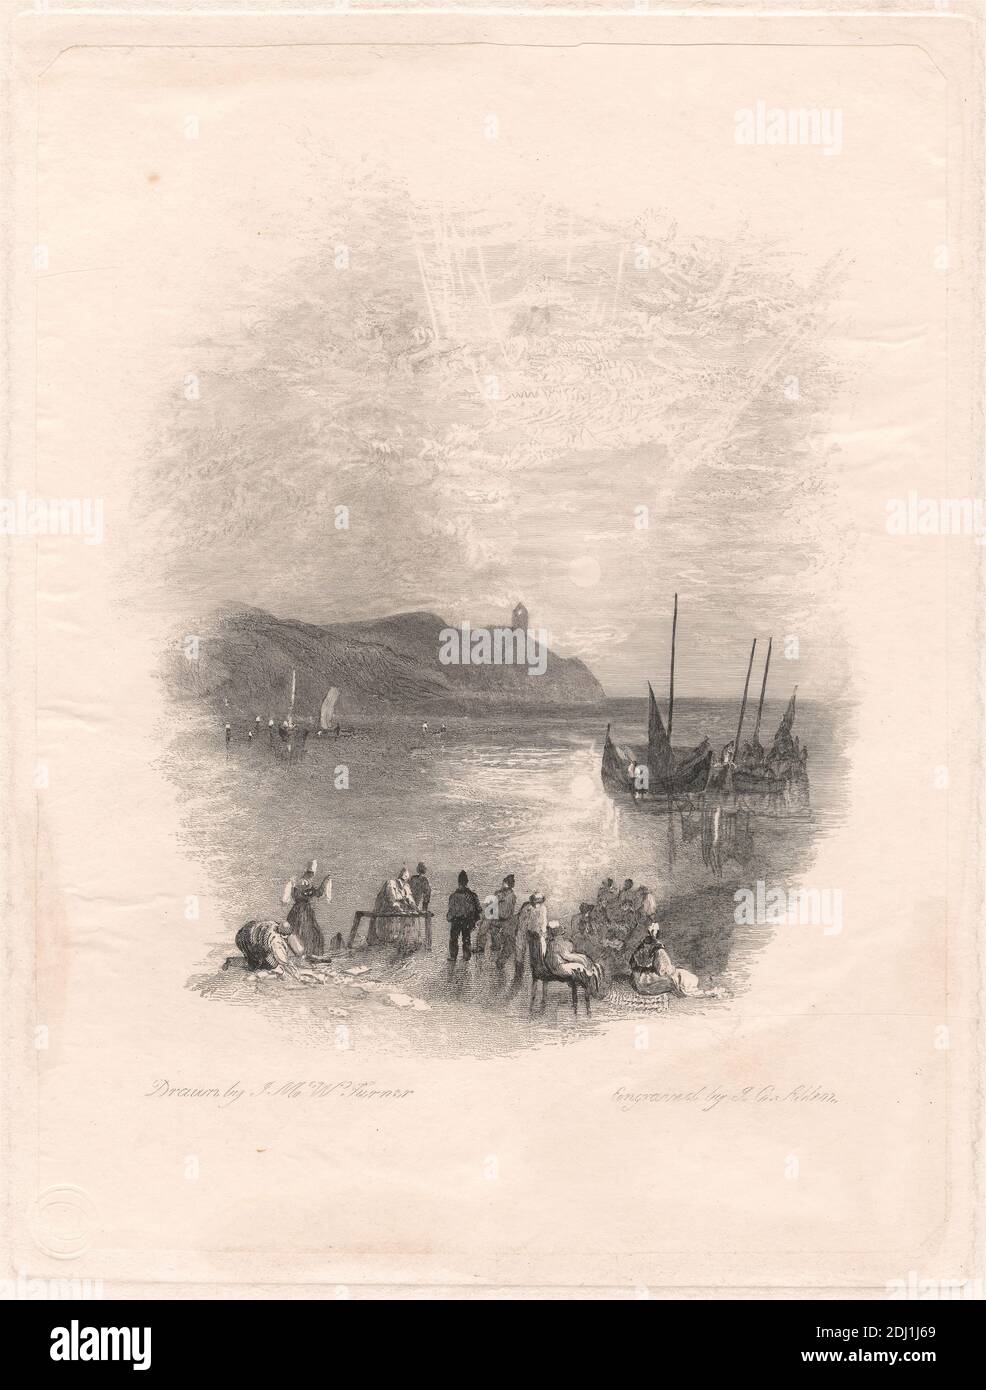 Harborough Sands, James C. Allen, activo 1821–1831, británico, después de Joseph Mallord William Turner, 1775–1851, británico, 1819-1826, grabado y grabado, primera estta sobre moderadamente grueso, ligeramente texturizado, crema, papel de paloma, con crema, chine colle, Hoja: 13 11/16 × 9 9/16 pulgadas (34.8 × 24.3 cm), placa: 6 11/16 × 5 1/8 pulgadas (17 × 13 cm), cuello de barbilla: 6 3/8 × 4 13/16 pulgadas (16.2 × 12.2 cm), e imagen: 4 3/4 × 4 pulgadas (12.1 × 10.2 cm) Foto de stock